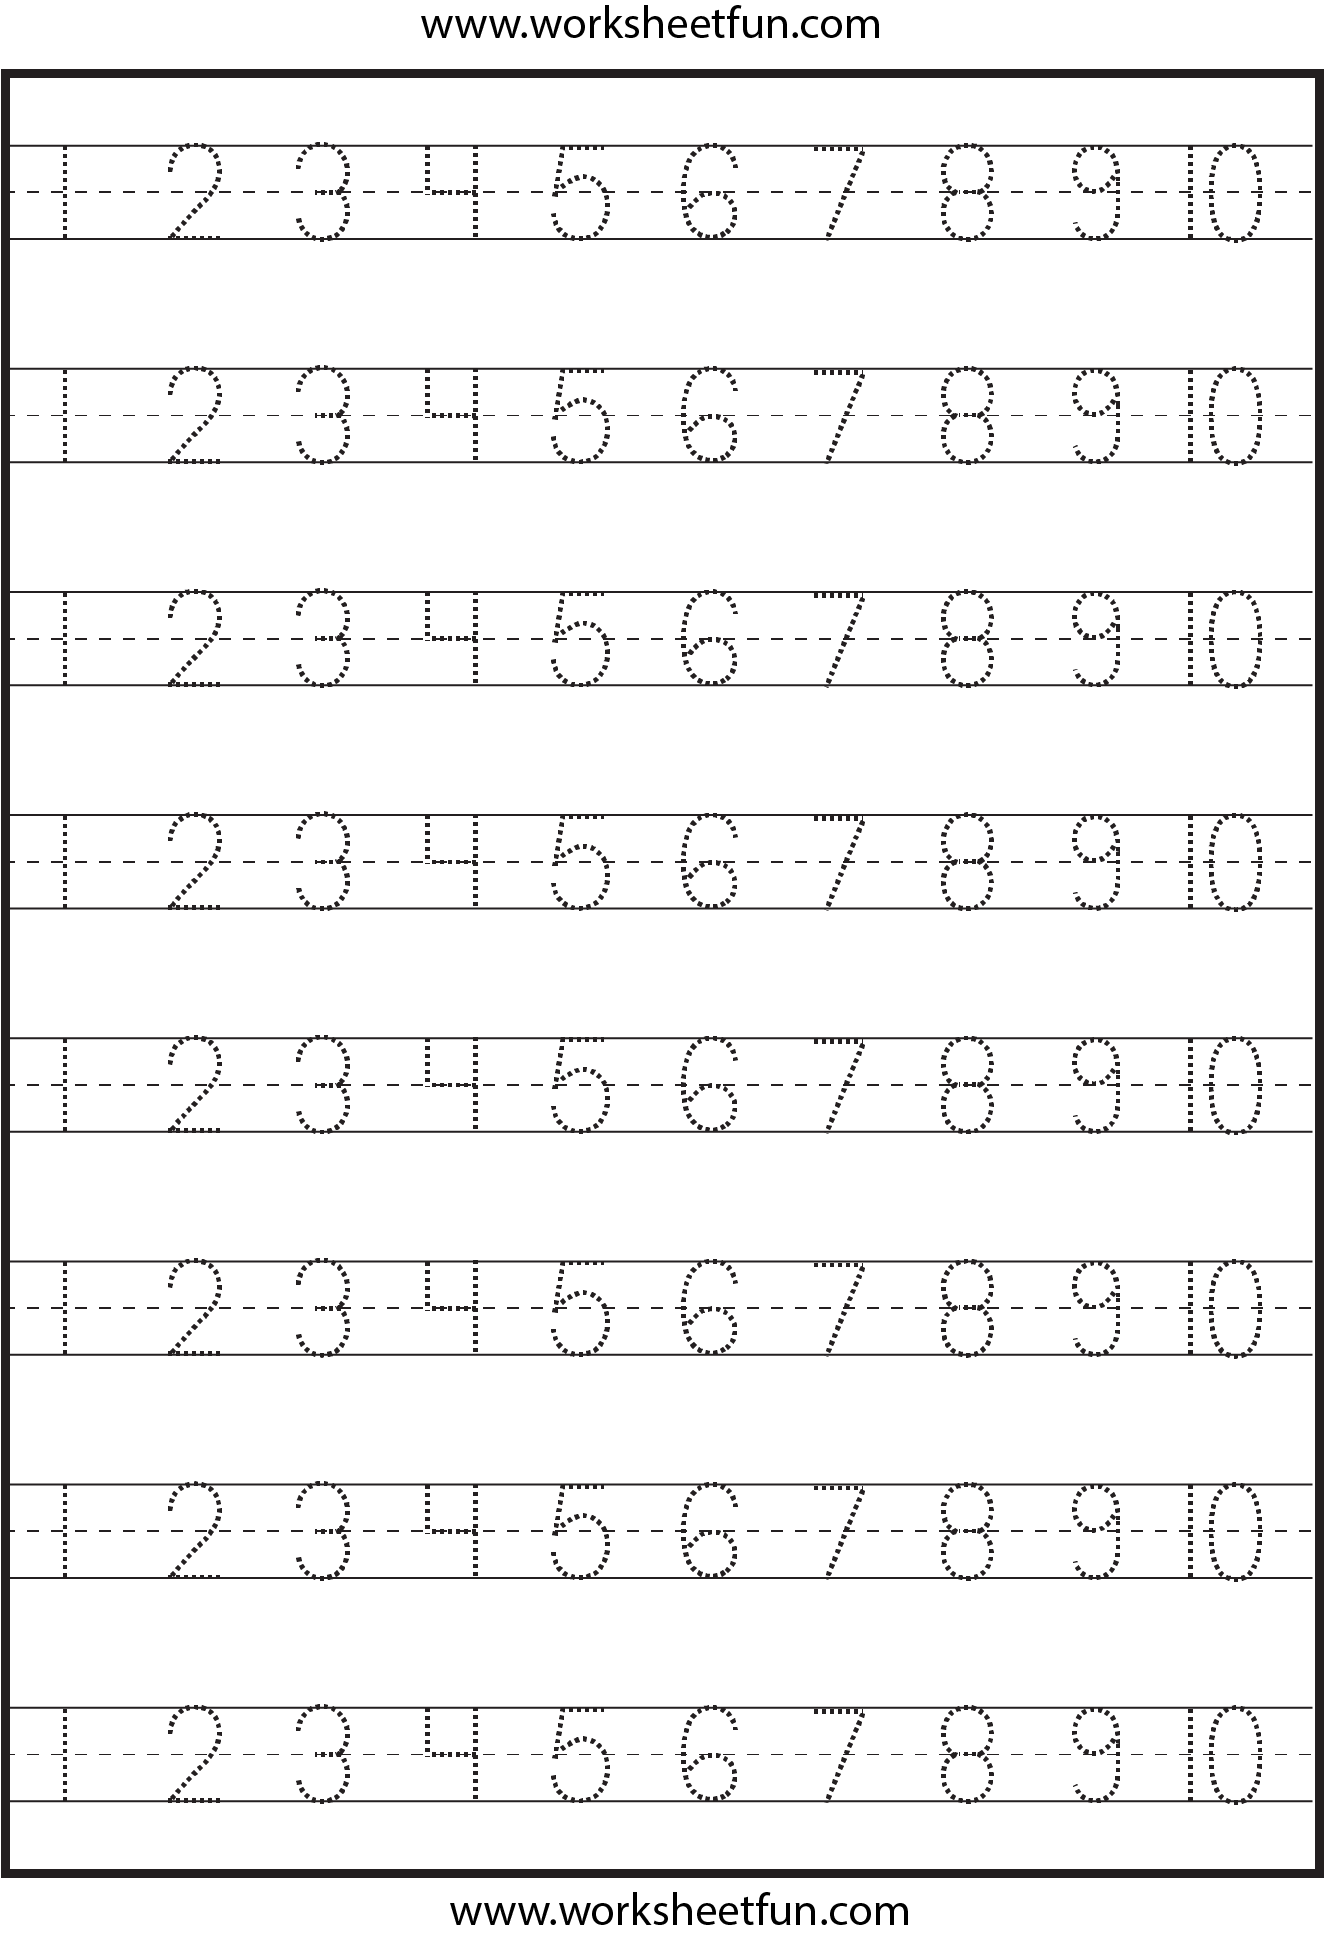 practicing-writing-numbers-worksheets-printable-worksheets